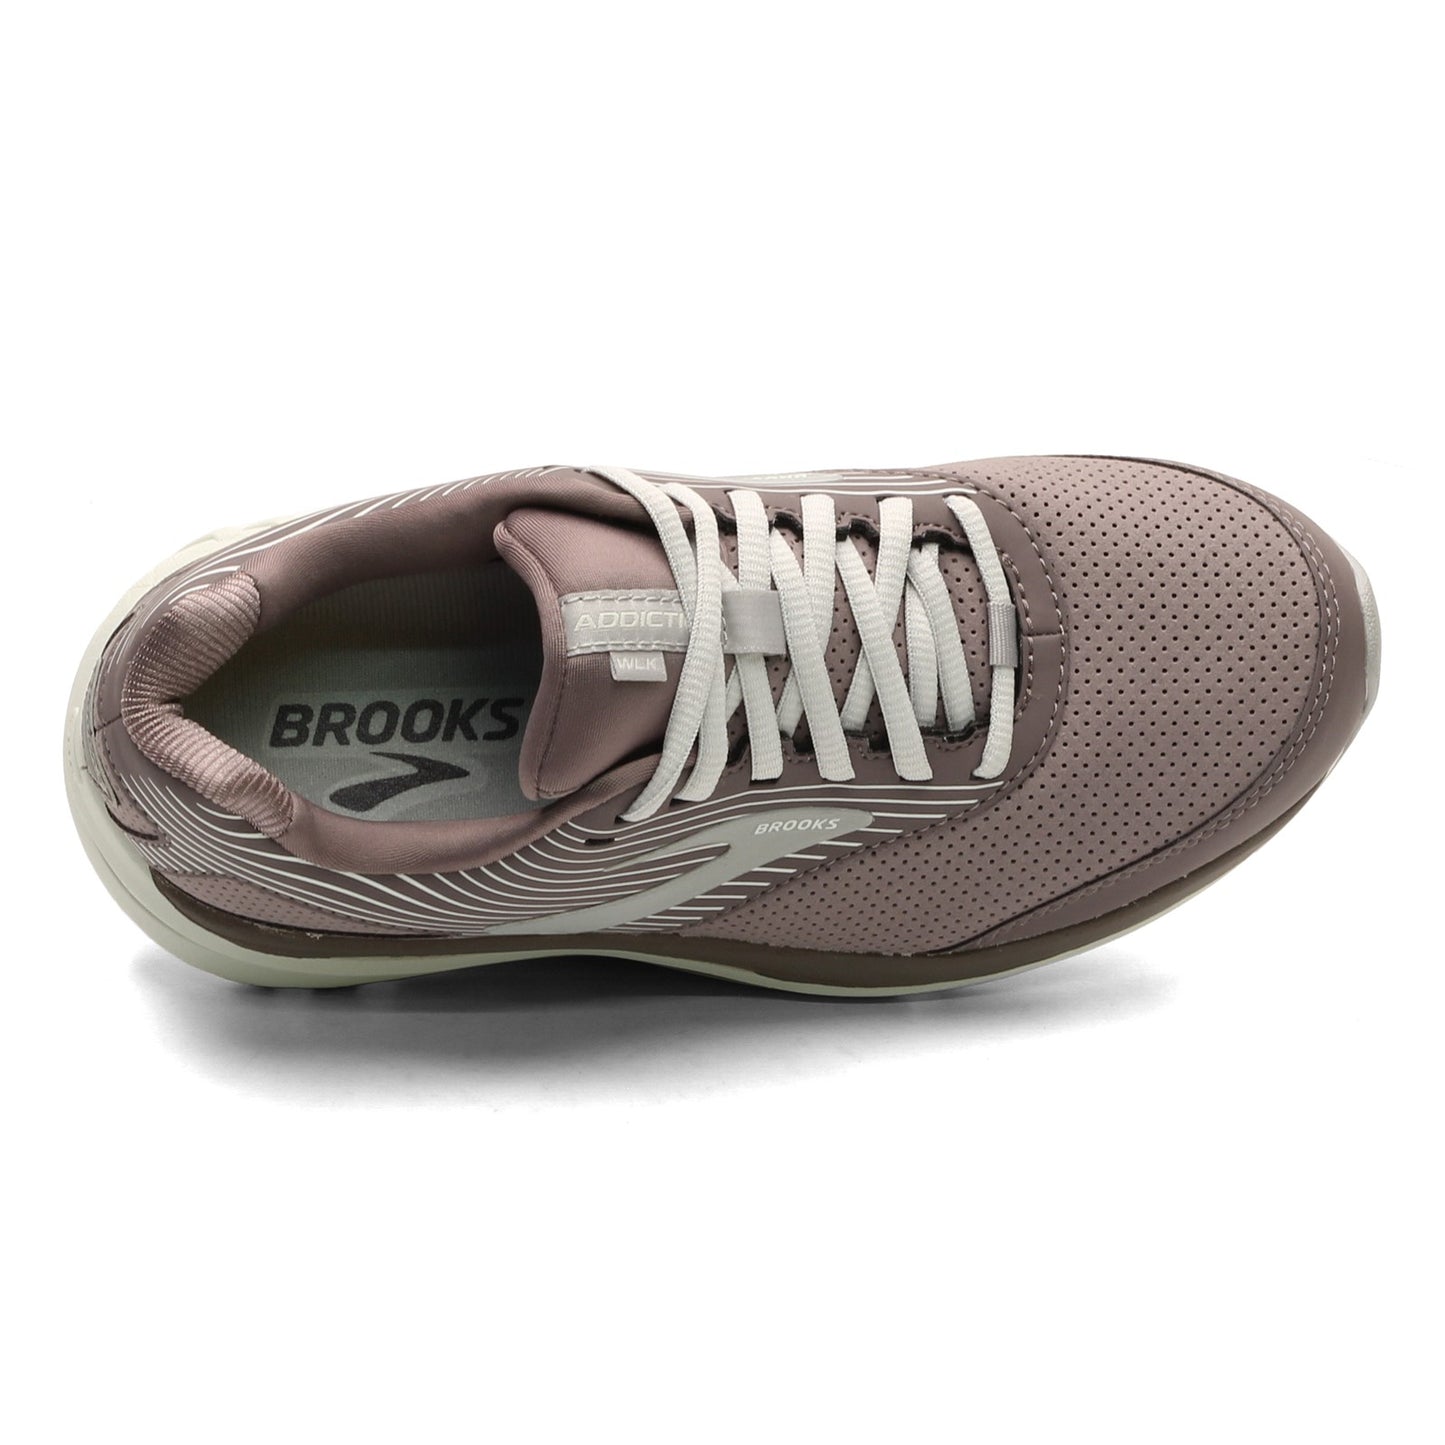 Peltz Shoes  Women's Brooks Addiction Walker 2 Walking Shoe - Wide Width Shark/Alloy 120308 2E 094